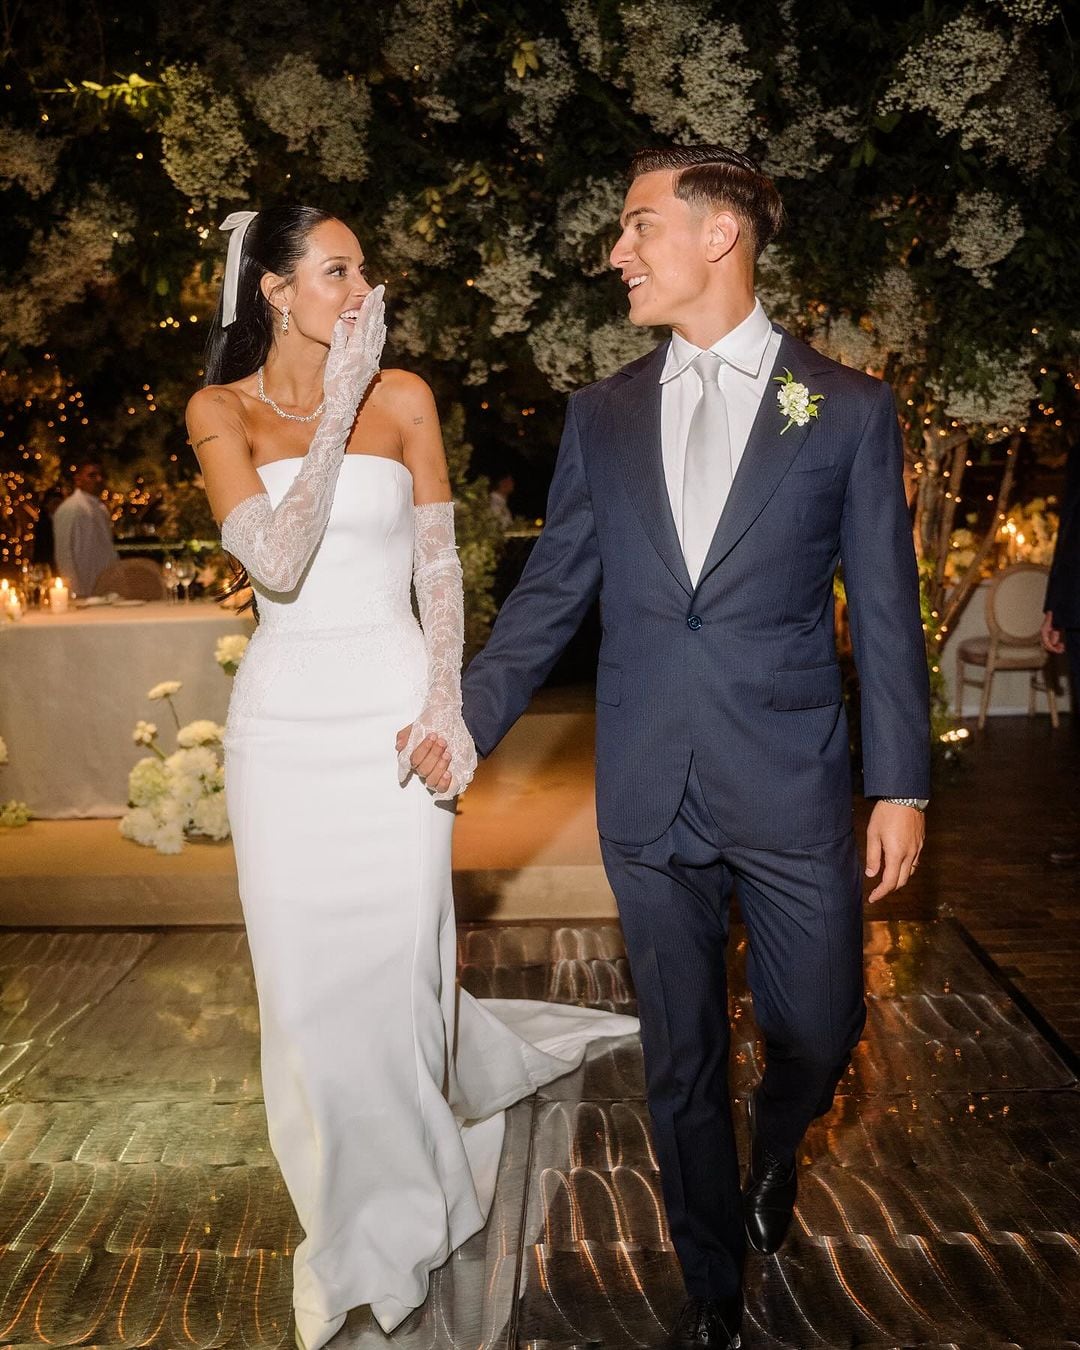 El casamiento de Oriana Sabatini y Paulo Dybala. Gentileza Instagram.